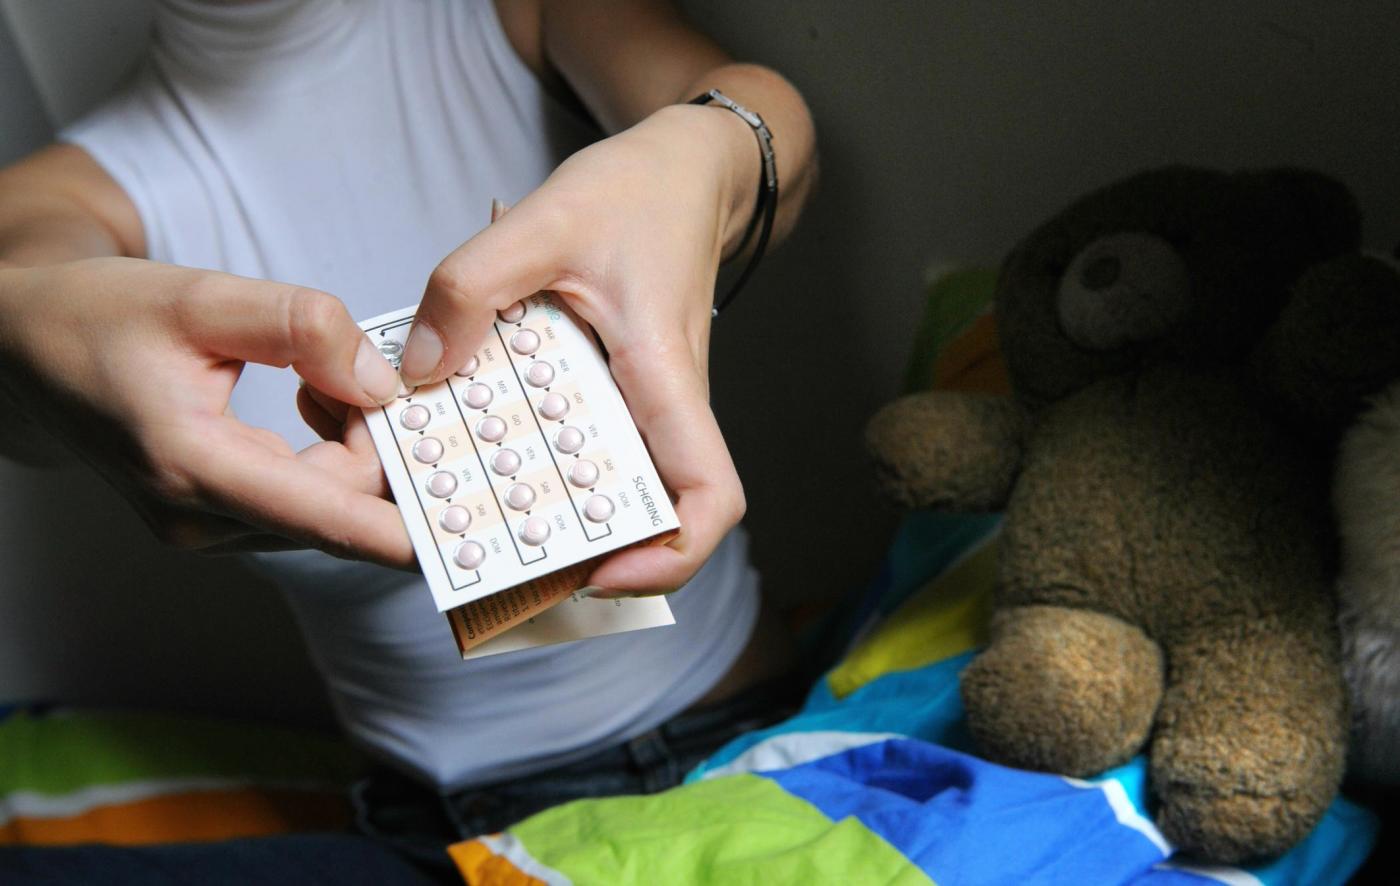 Pillola anticoncezionale a pagamento, da fascia A a fascia C: un danno per le fasce più basse